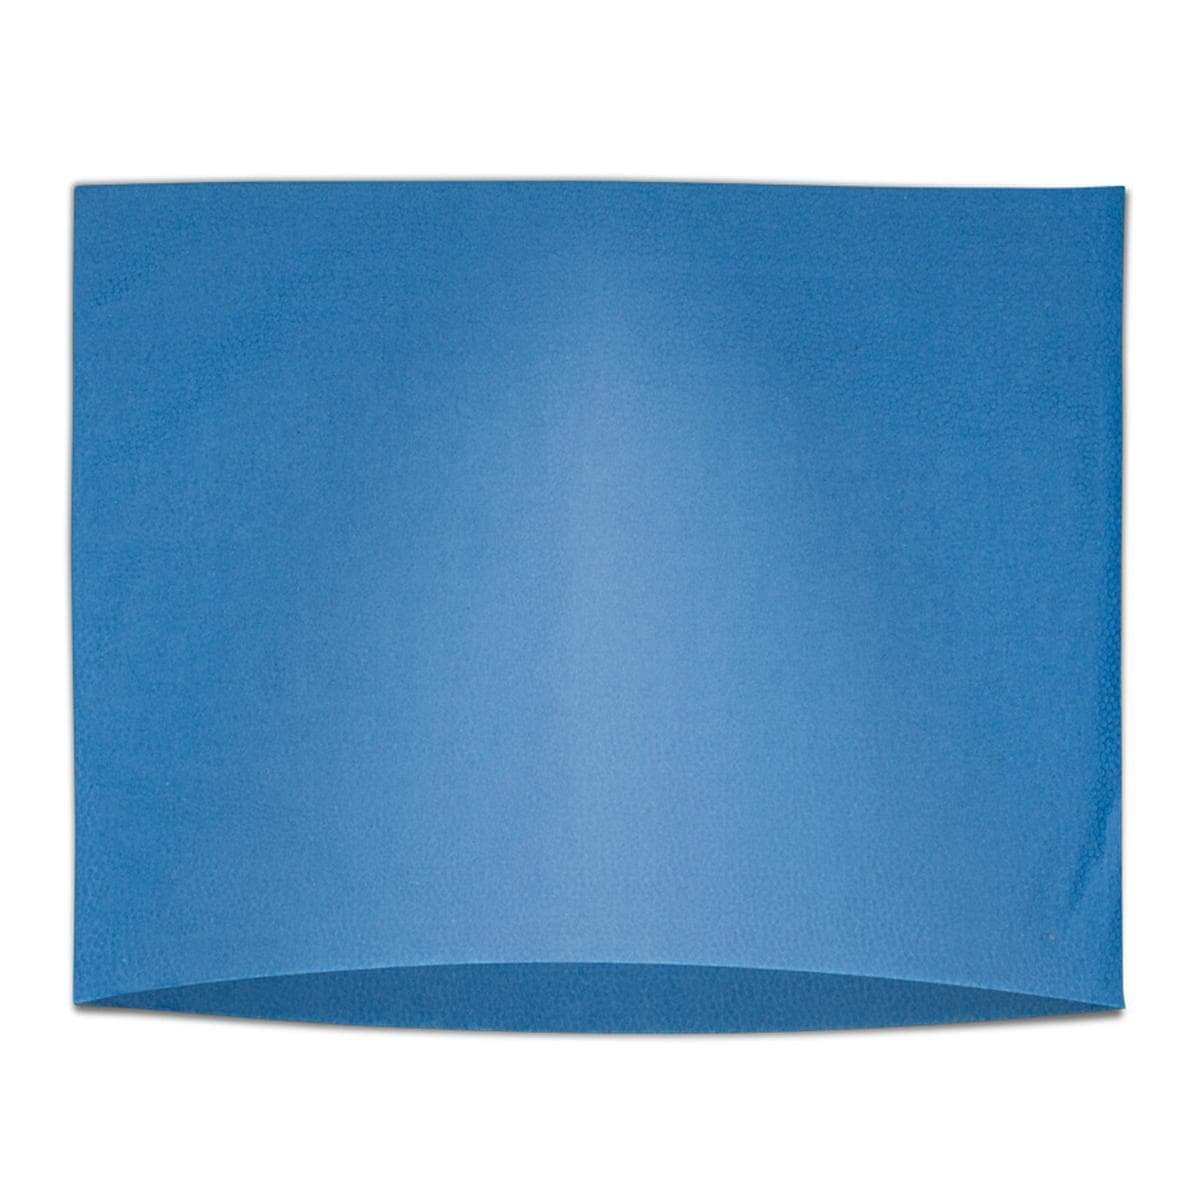 SafeBasics Hoofdsteunhoezen 25 x 33 cm - Donkerblauw, 500 stuks